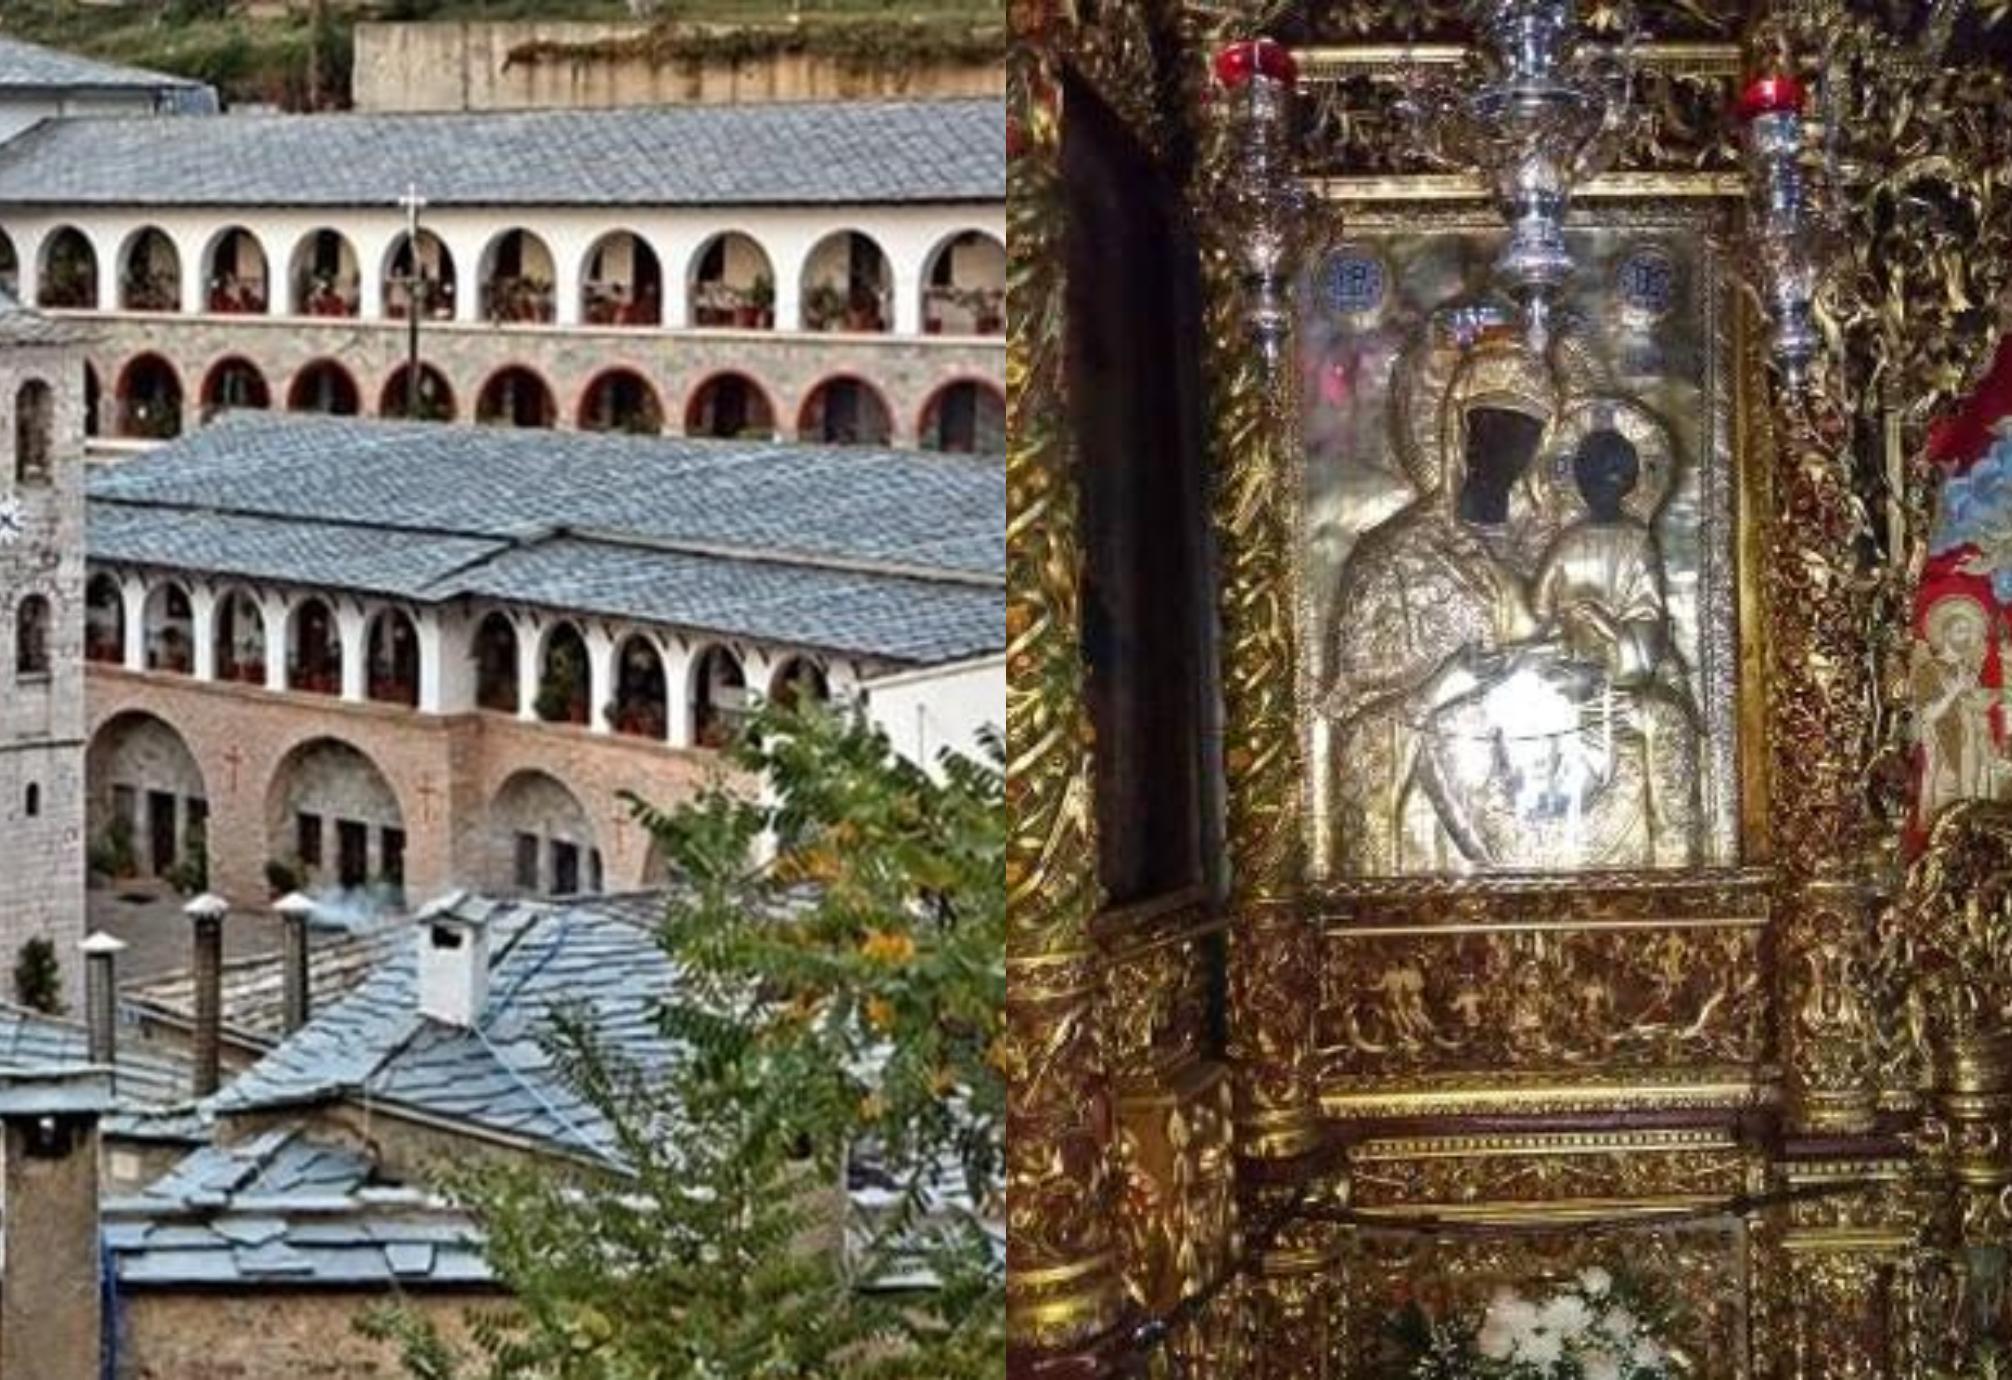 Η Παναγία η Εικοσιφοίνισσα: Η μαρτυρική ιστορία του παλαιότερου μοναστηριού της Ευρώπης – Η κτηνωδία των Τούρκων που έσφαξαν 172 μοναχούς